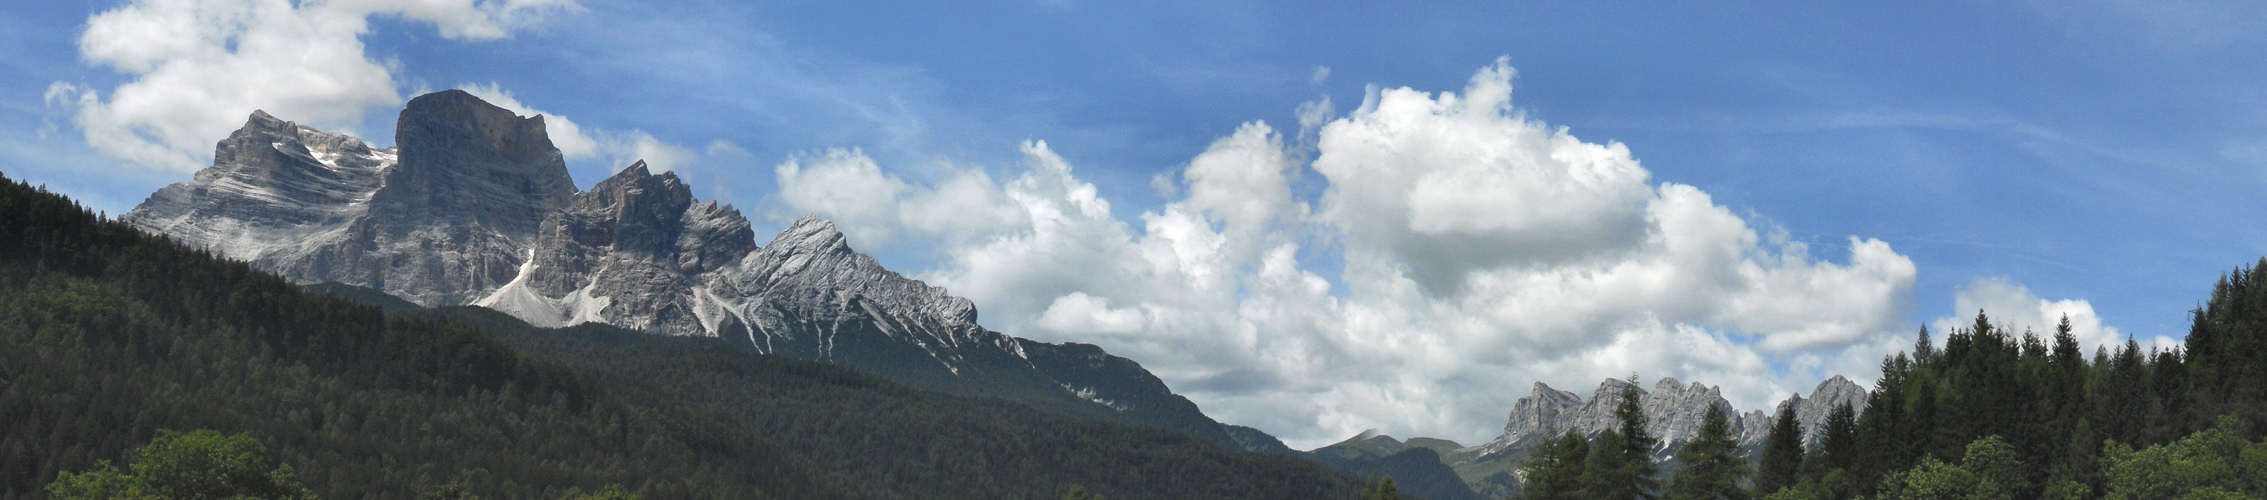 Dolomiti: monte Pelmo - Val d'Ampezzo